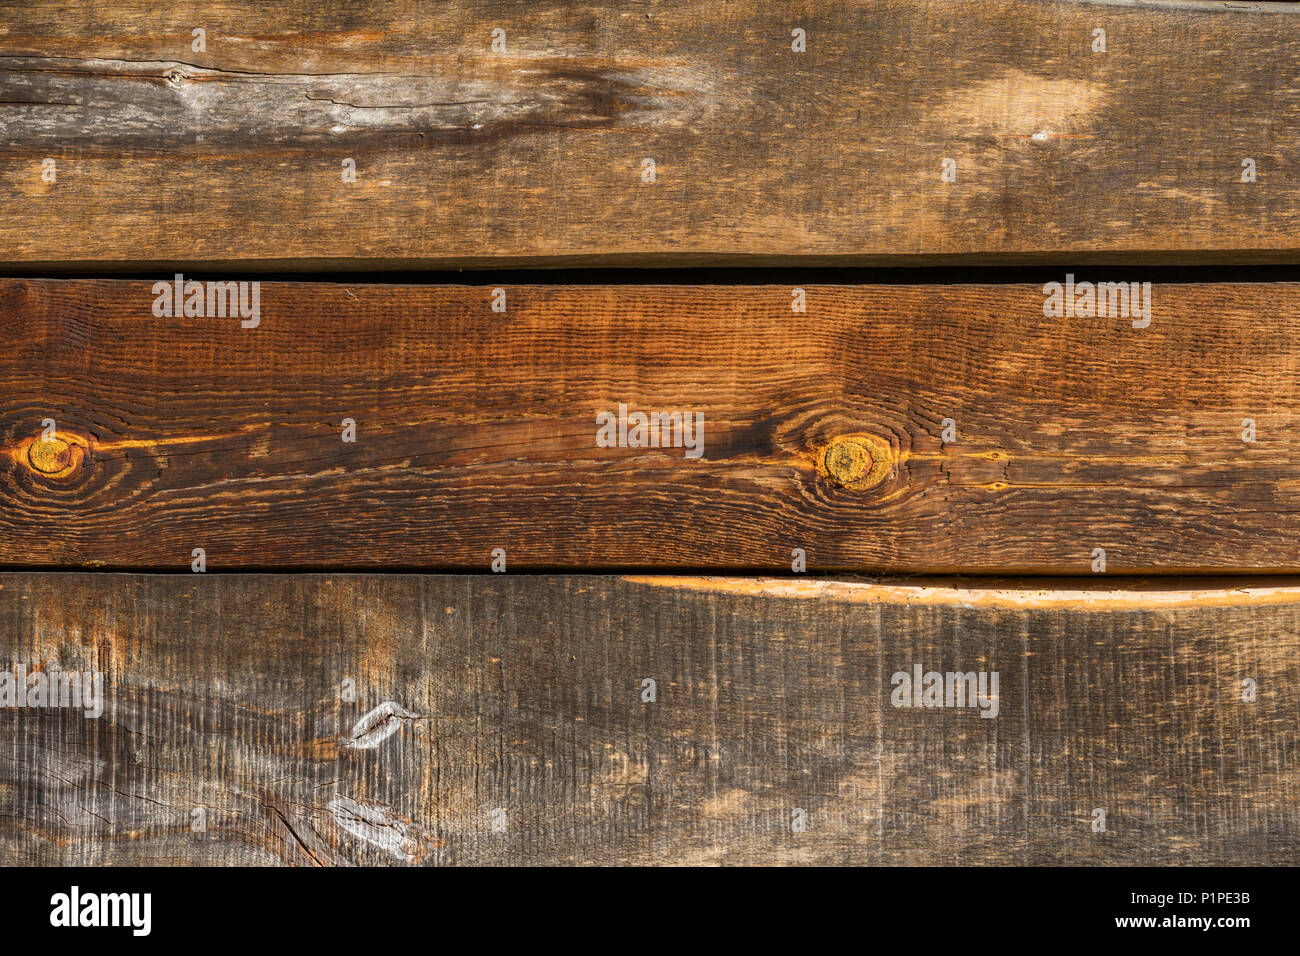 Superficie de madera natural, textura de cerca. Los tablones de madera horizontales de madera rústica con grietas, arañazos de moderno diseño grunge, patrones de fondo, espacio de copia Foto de stock